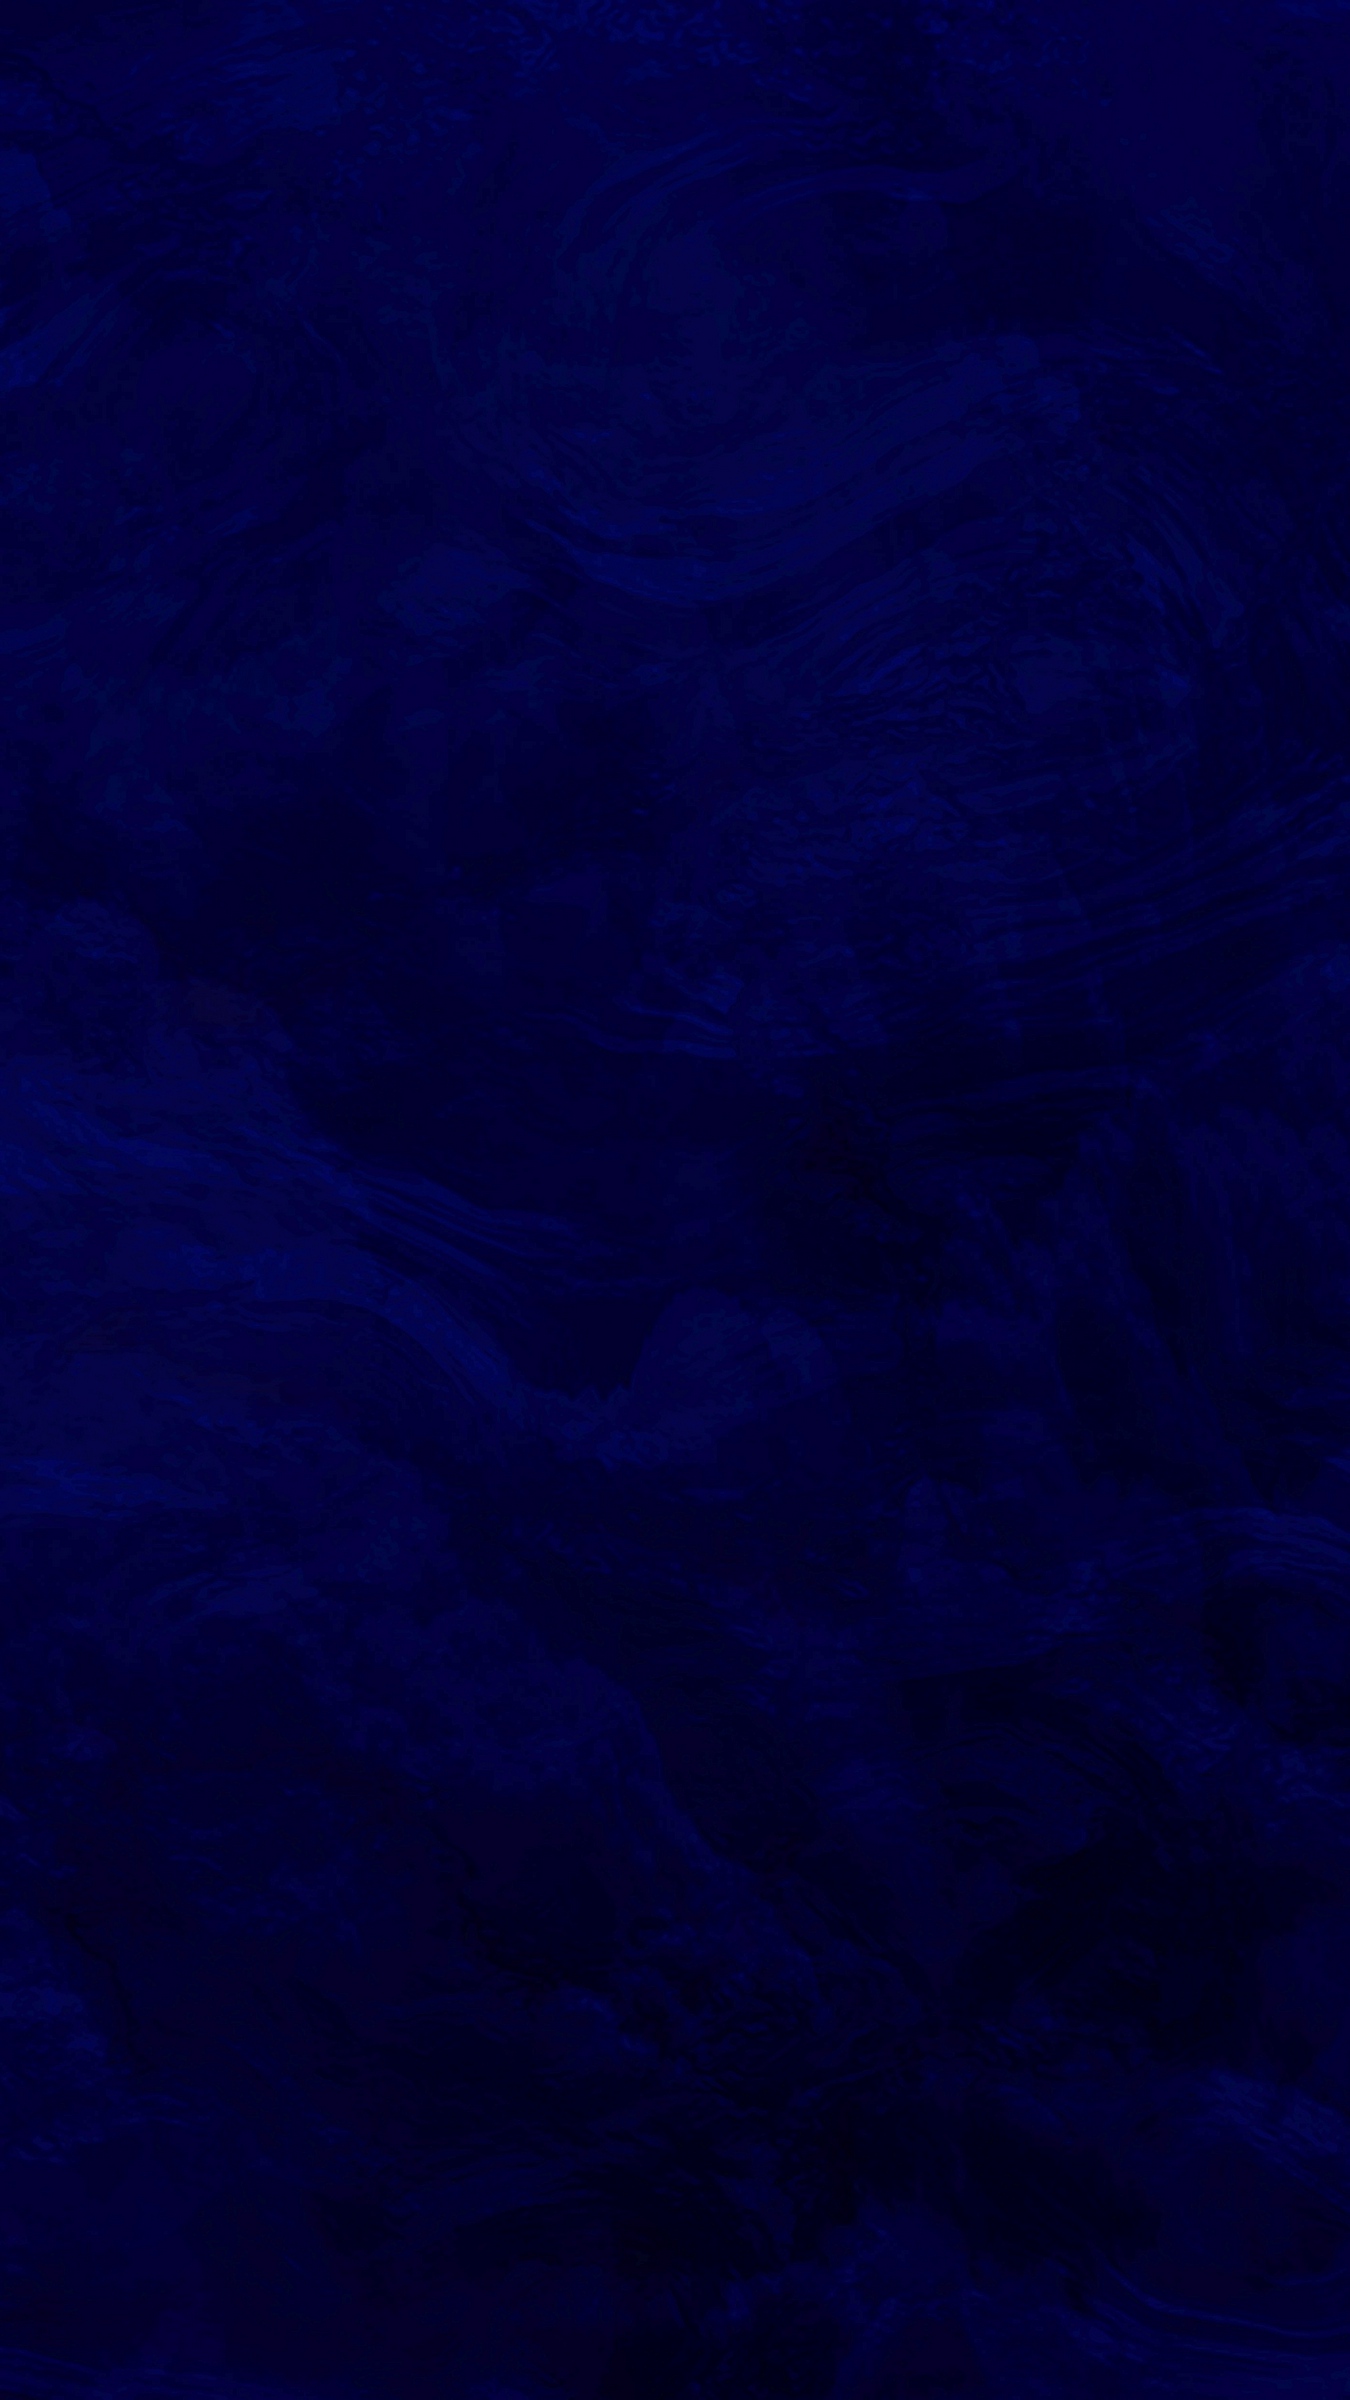 Wallpaper Texture Surface Dark Blue Iphone Dark Blue Wallpaper Hd Hd Wallpaper Backgrounds Download